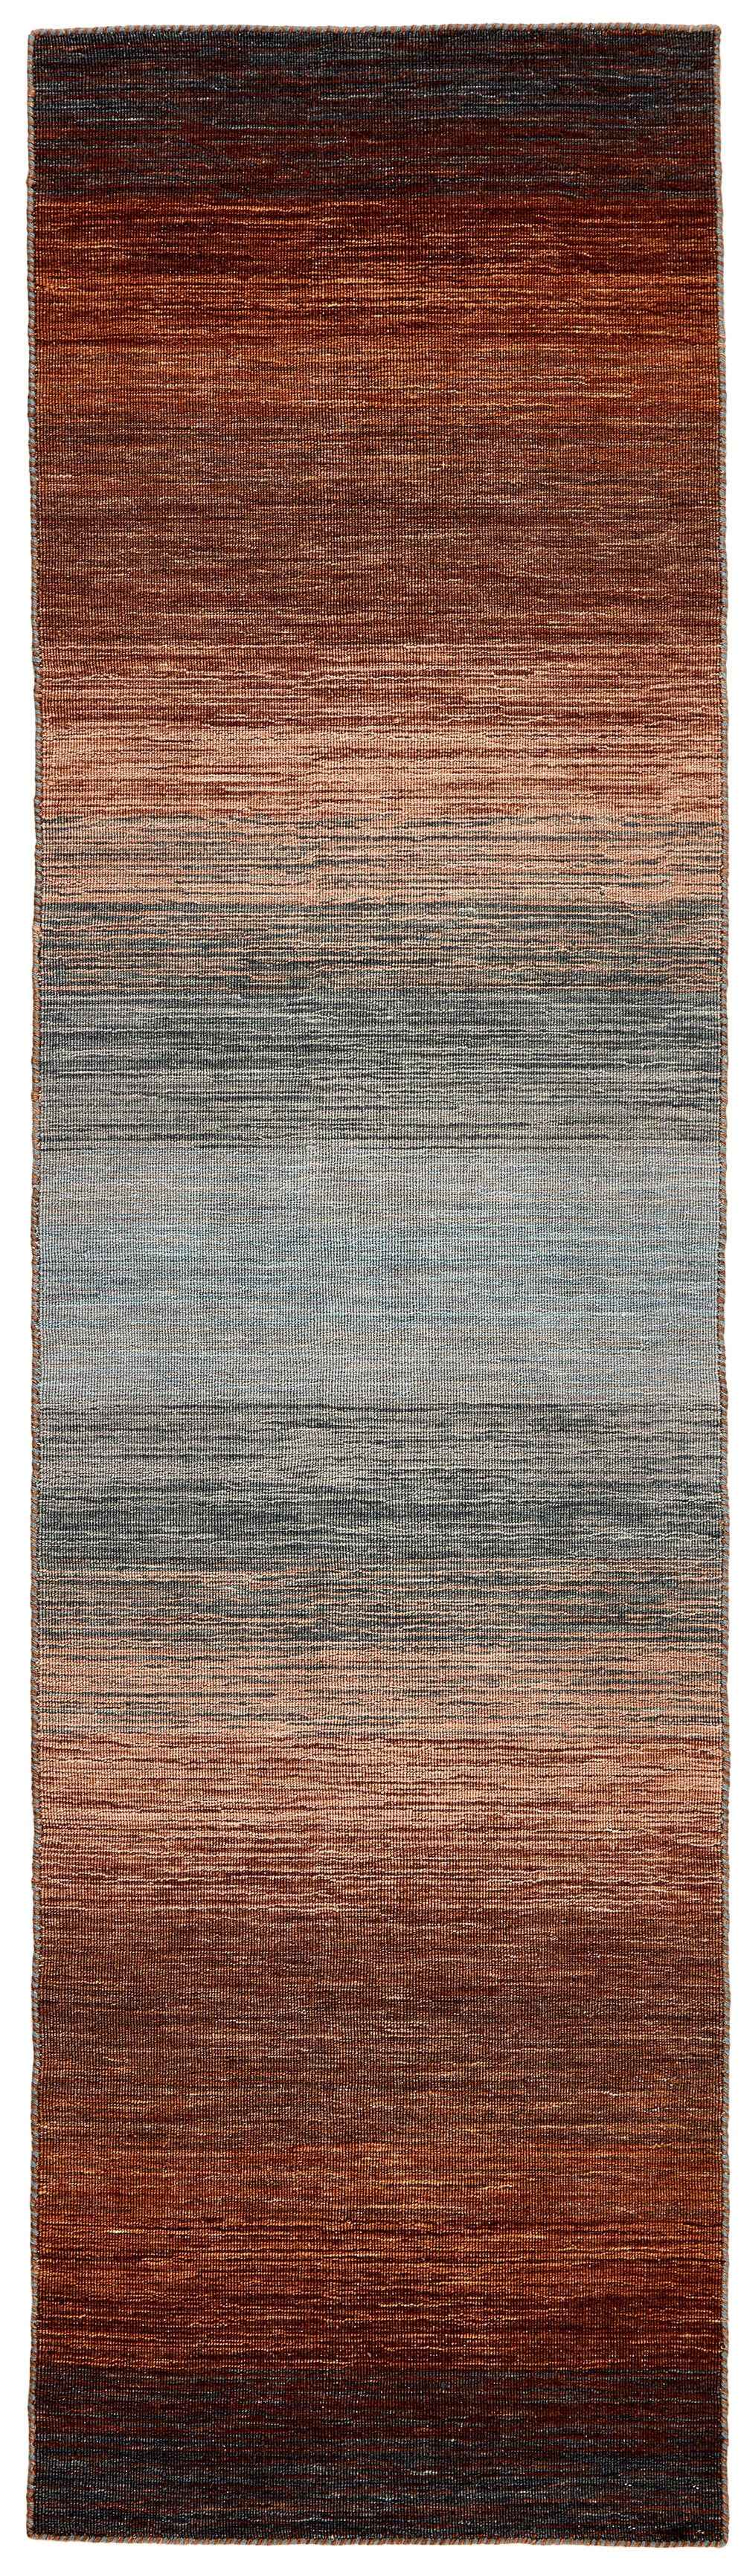 200x80 cm  Indian Wool Multicolor Rug-HLD200111, Brown Multi